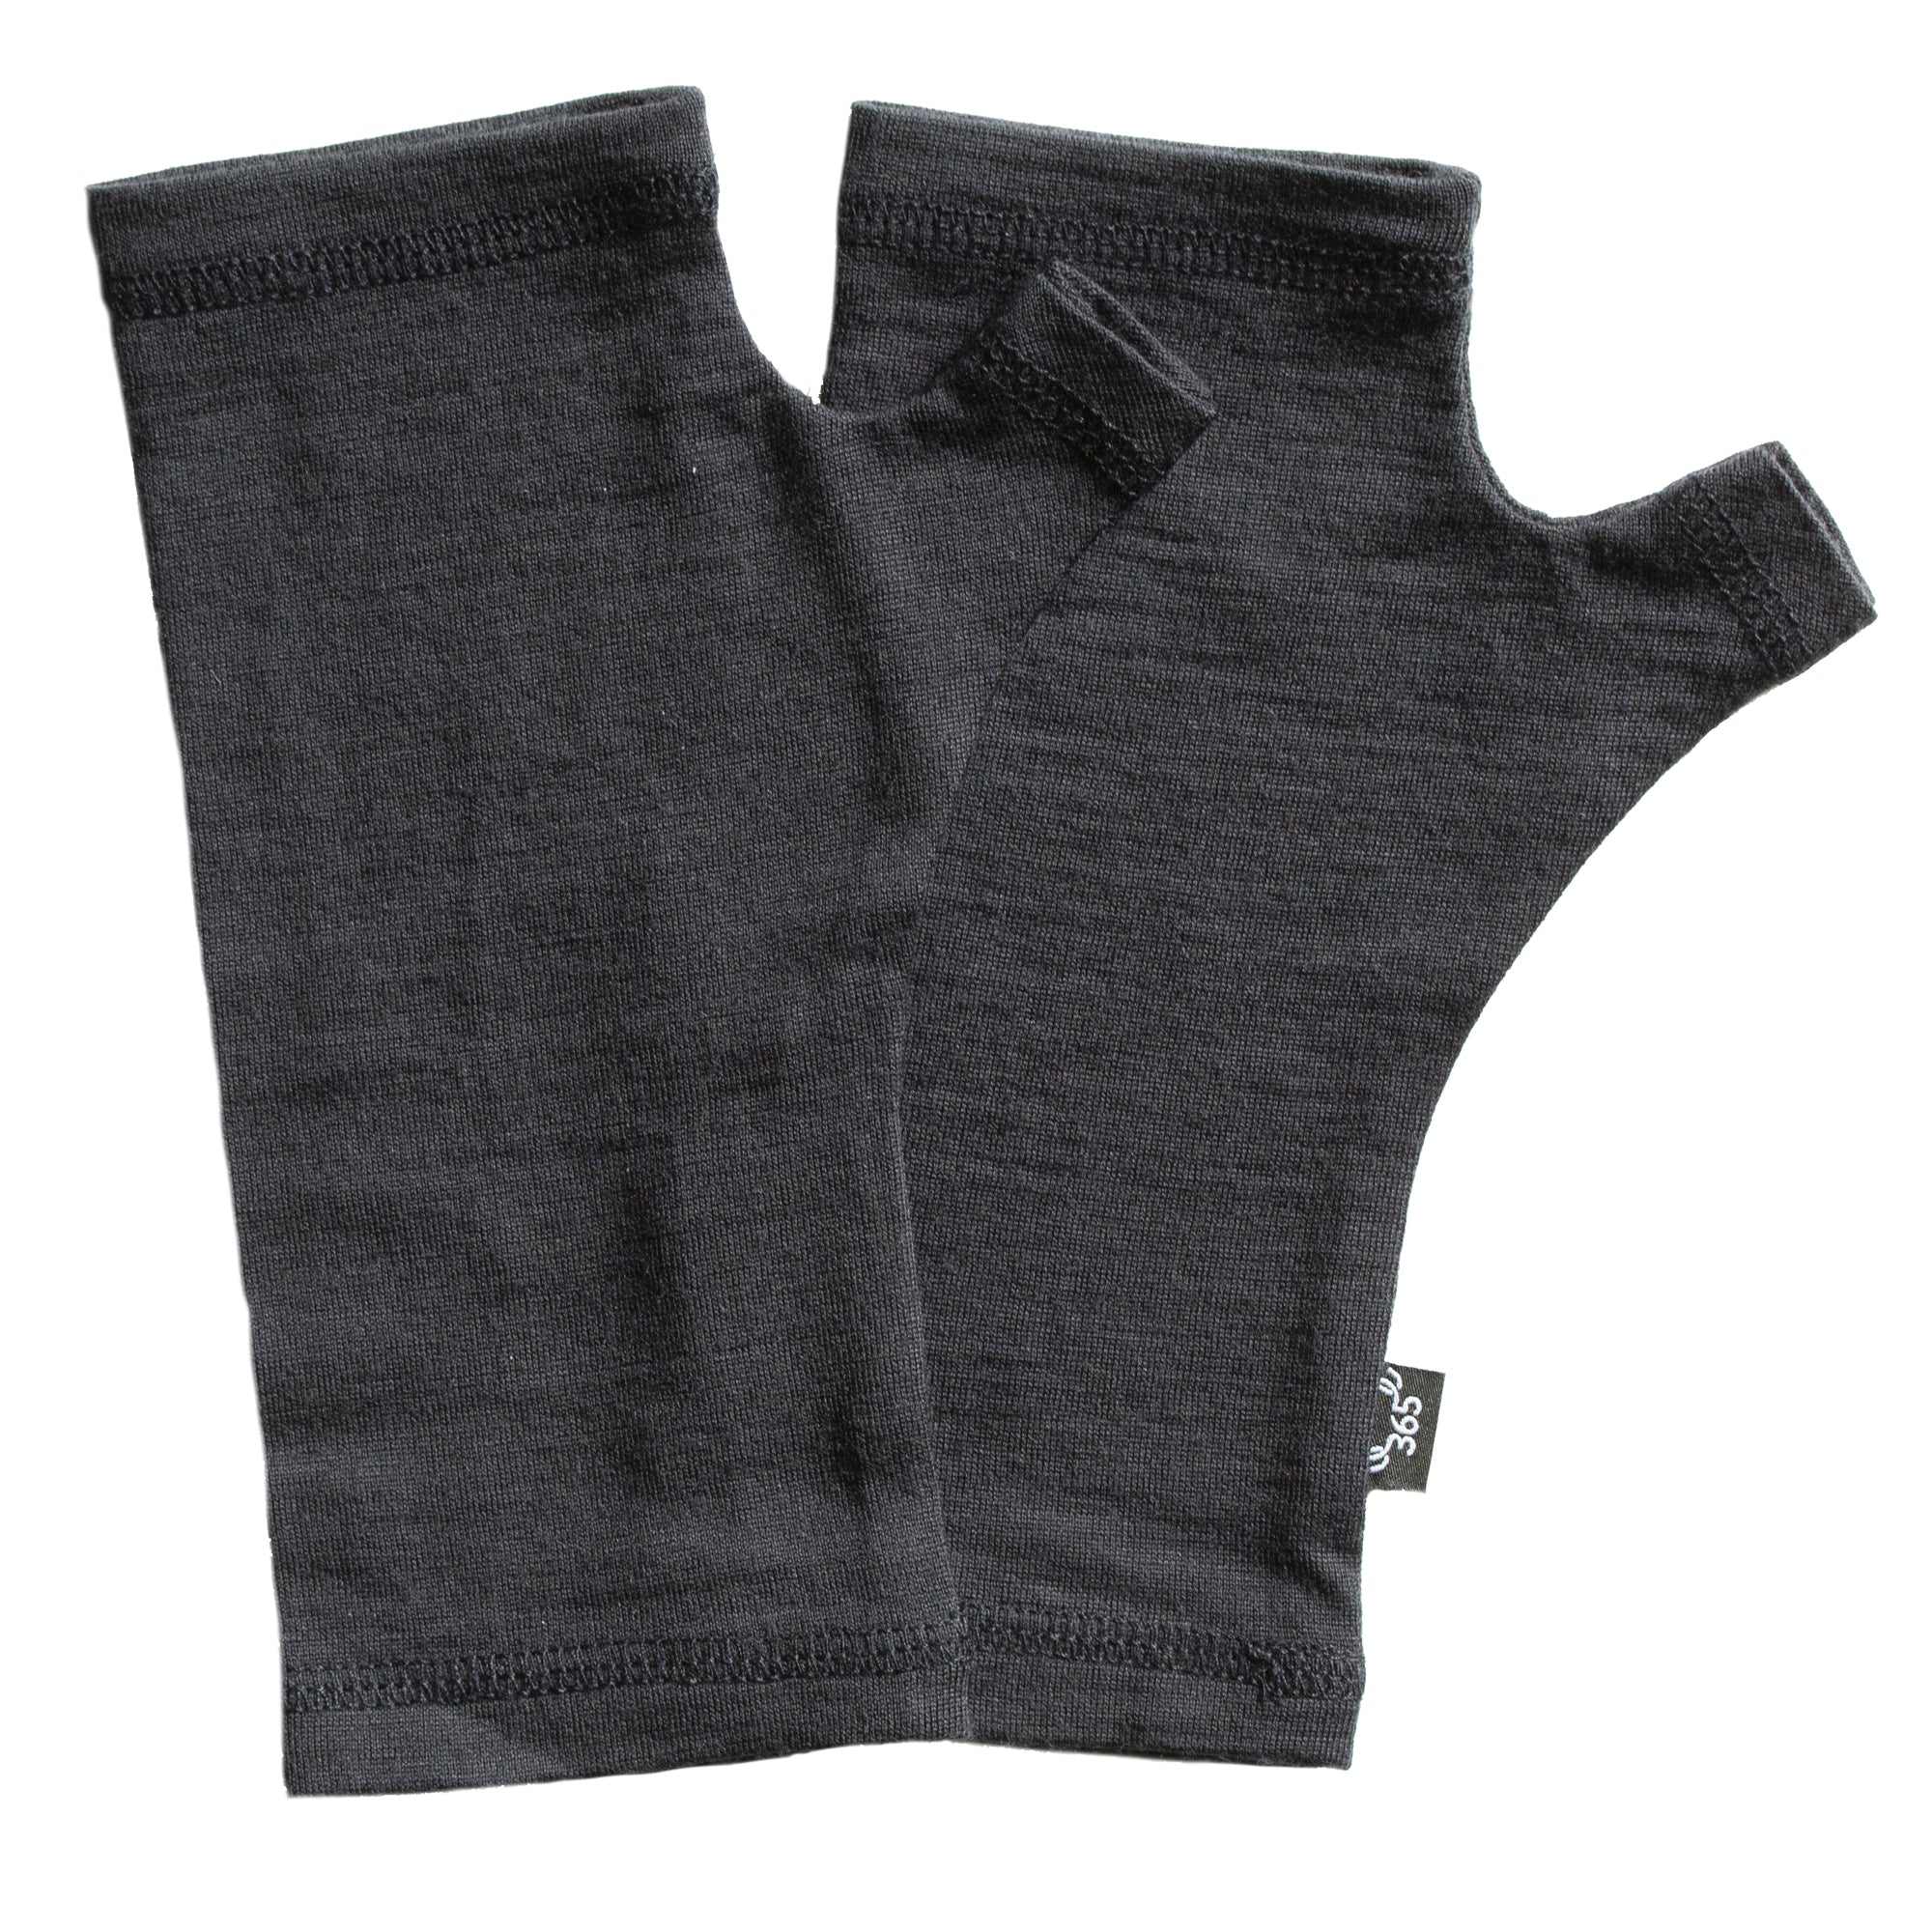 Merino 365 Fingerless Gloves - One Size - Black